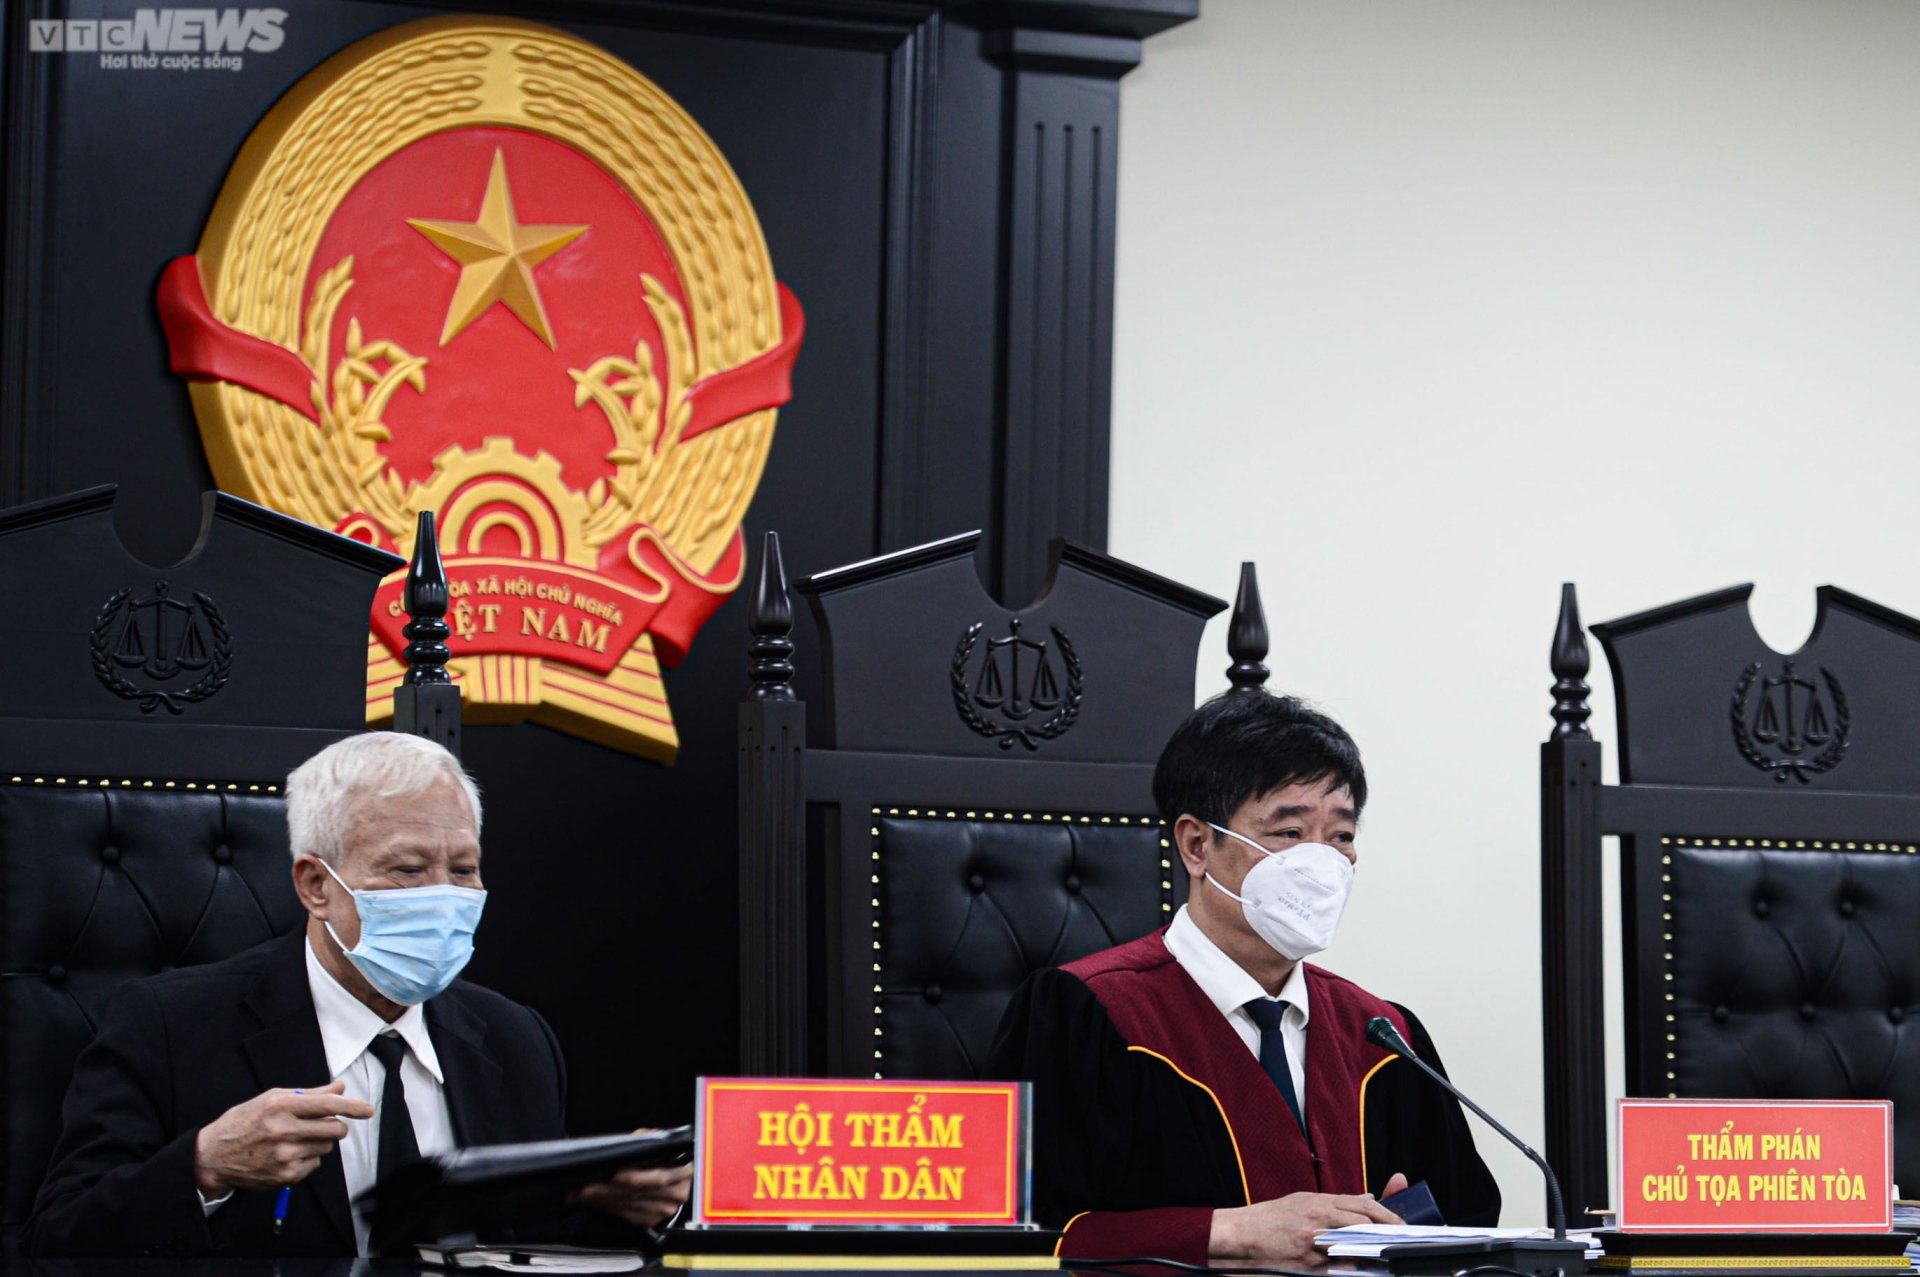 Cựu Giám đốc Bệnh viện Tim Hà Nội Nguyễn Quang Tuấn bị dẫn giải tới tòa - 4